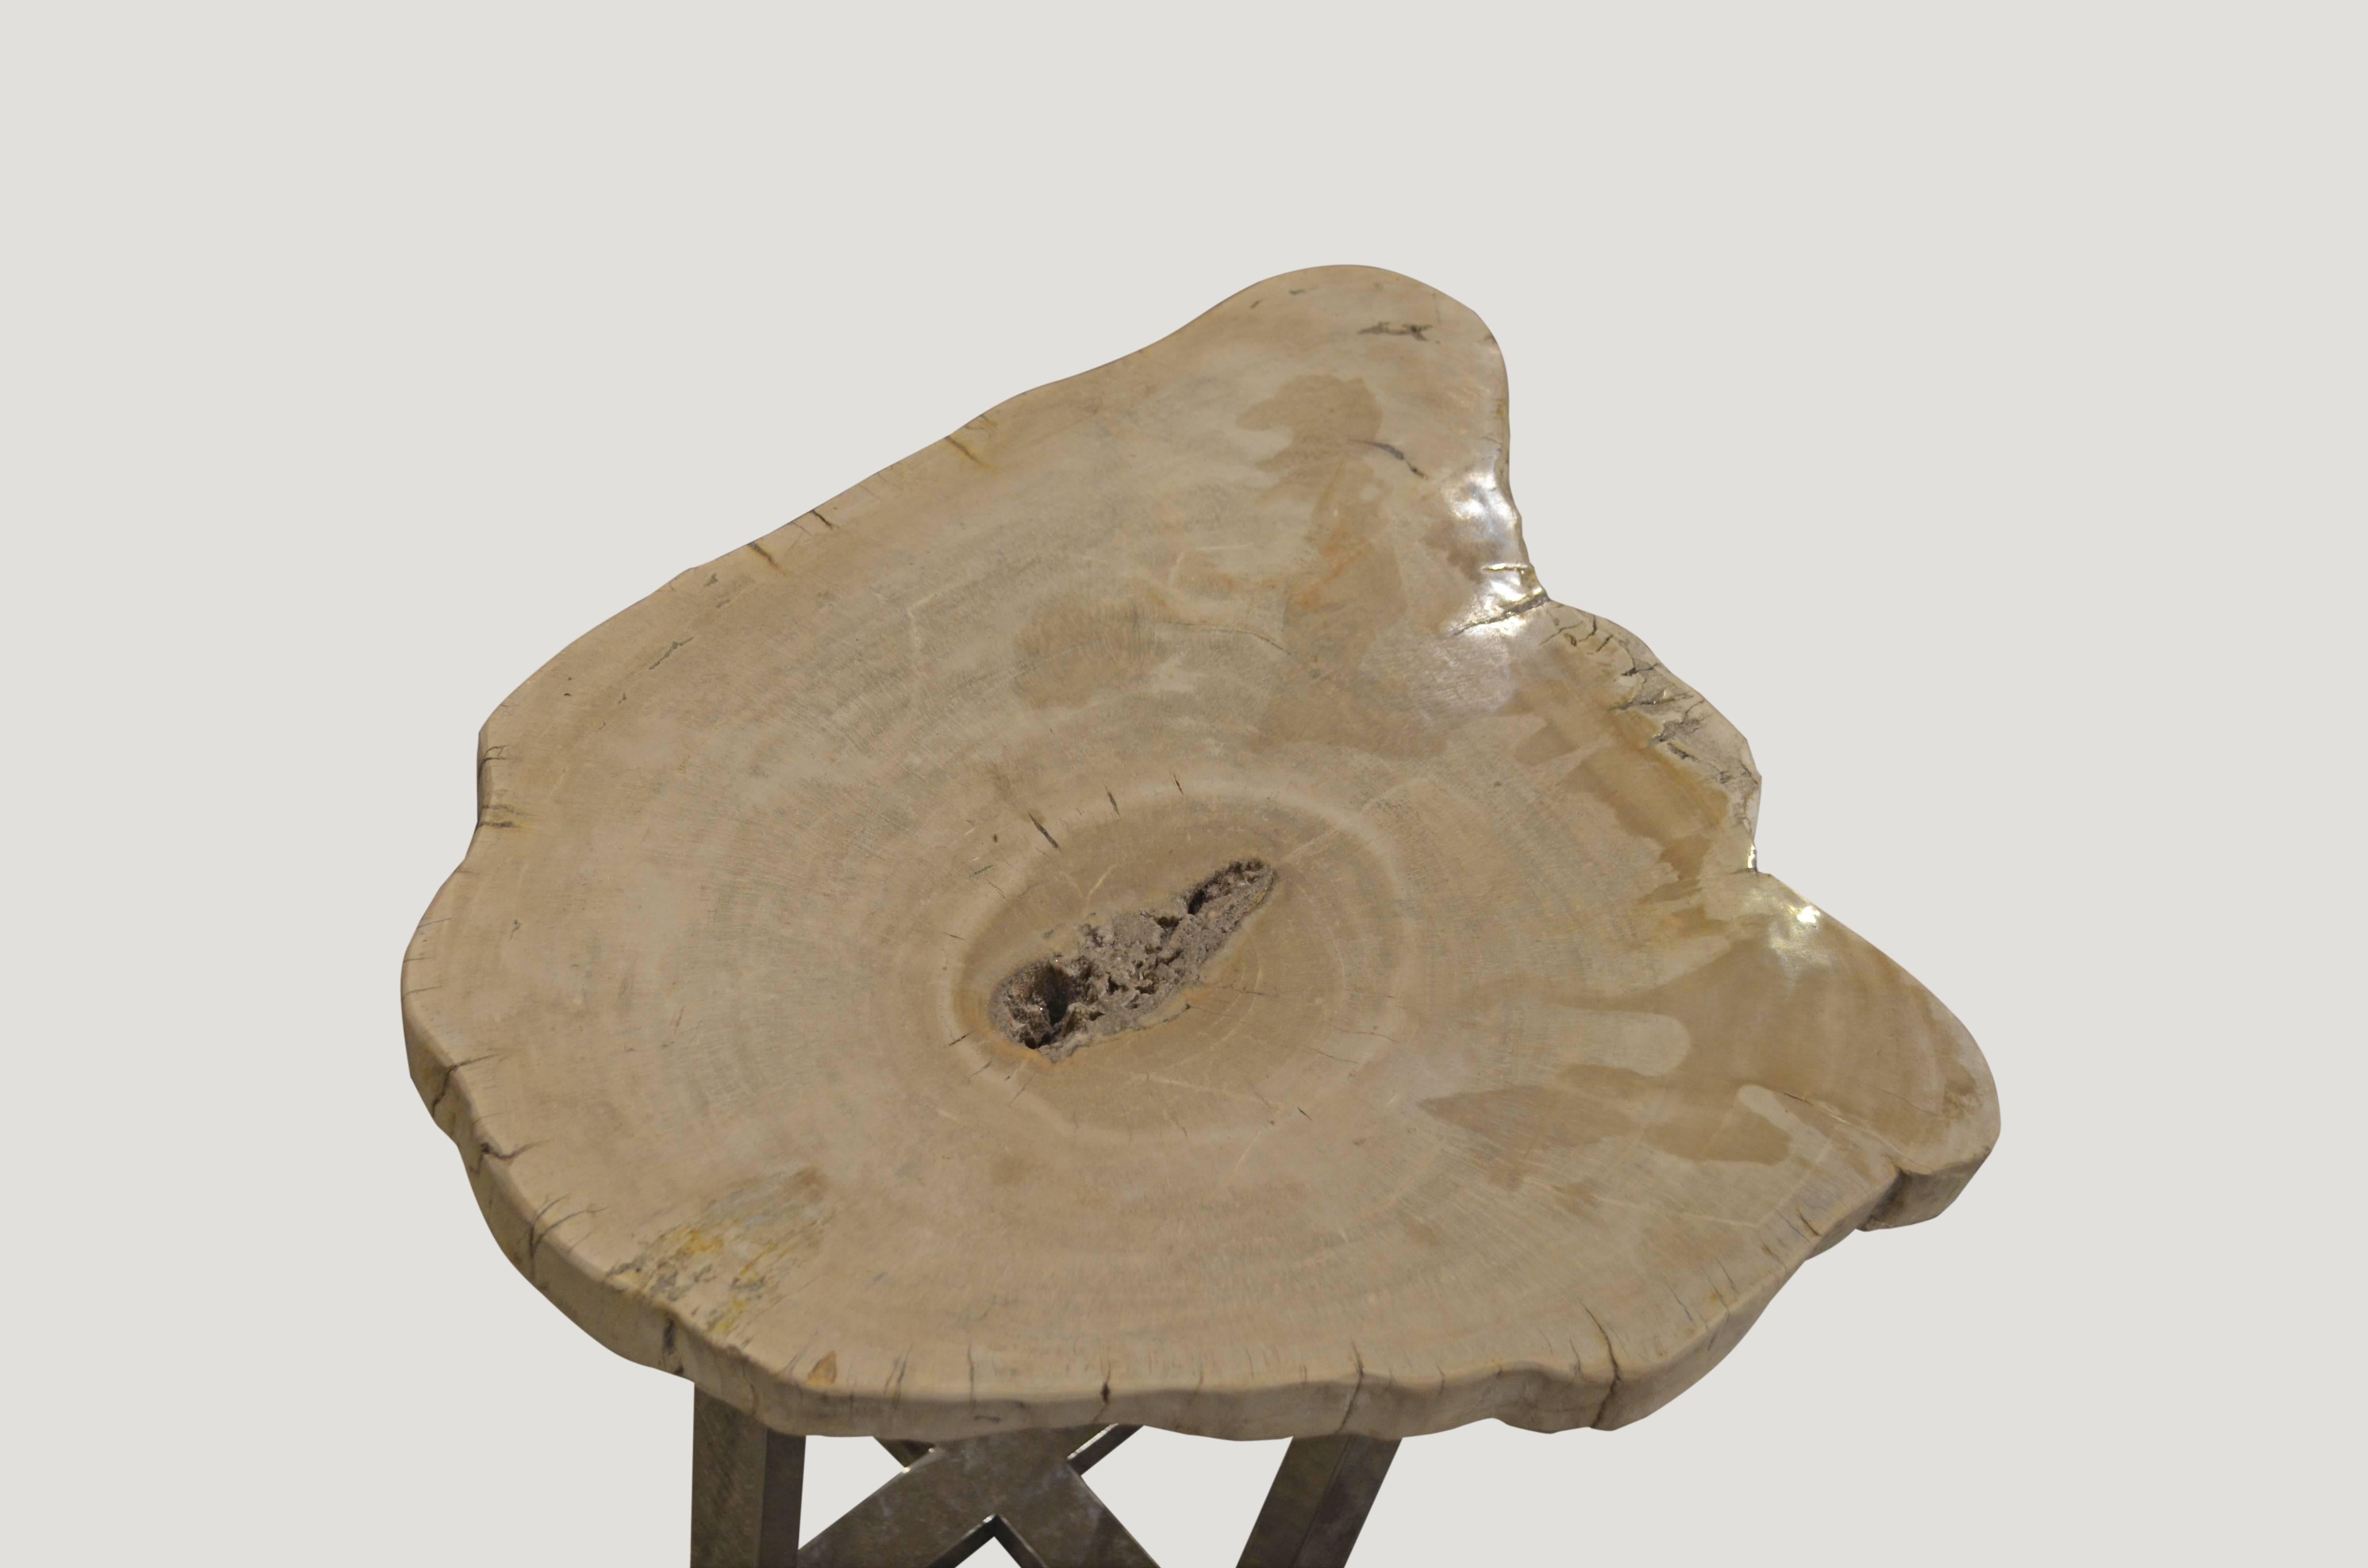 Platte aus versteinertem Holz, schwebend auf einem Sockel aus Edelstahl. Schöne kristallisierte Details in der Mitte.

Wir beziehen das hochwertigste versteinerte Holz, das es gibt. Jedes Stück ist handverlesen und hochglanzpoliert mit minimalen